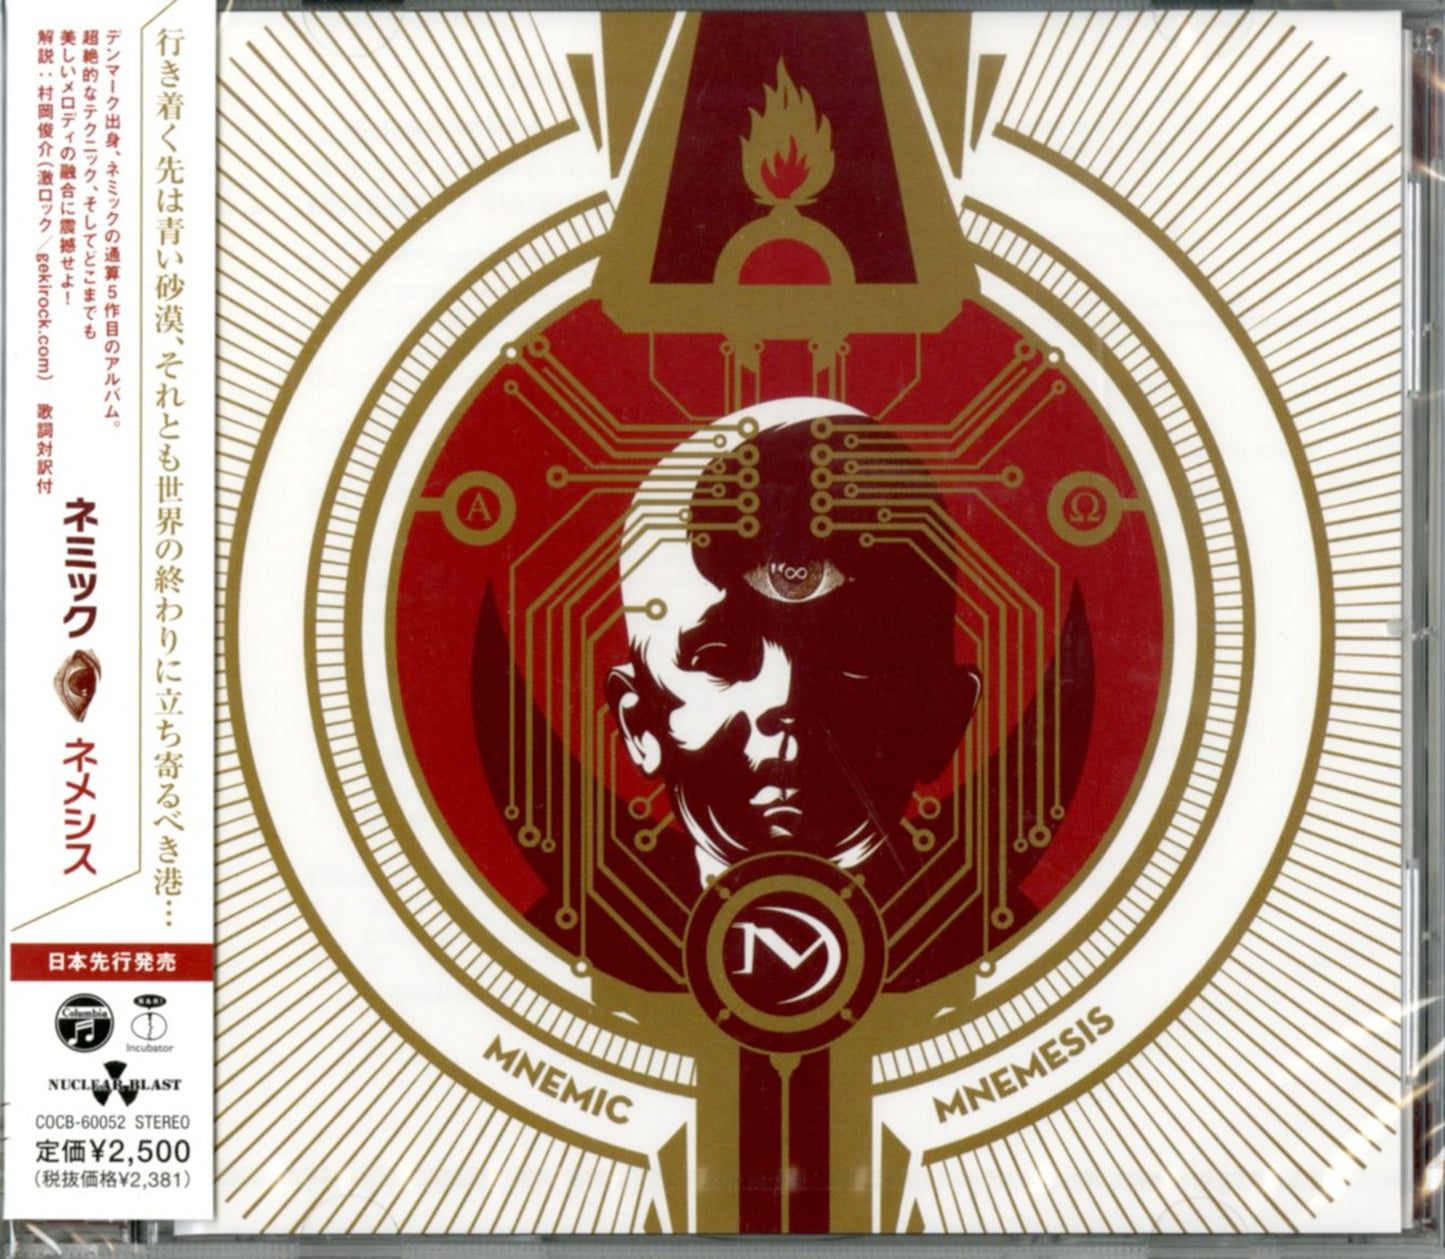 Mnemic - Mnemic - Japan  CD Bonus Track